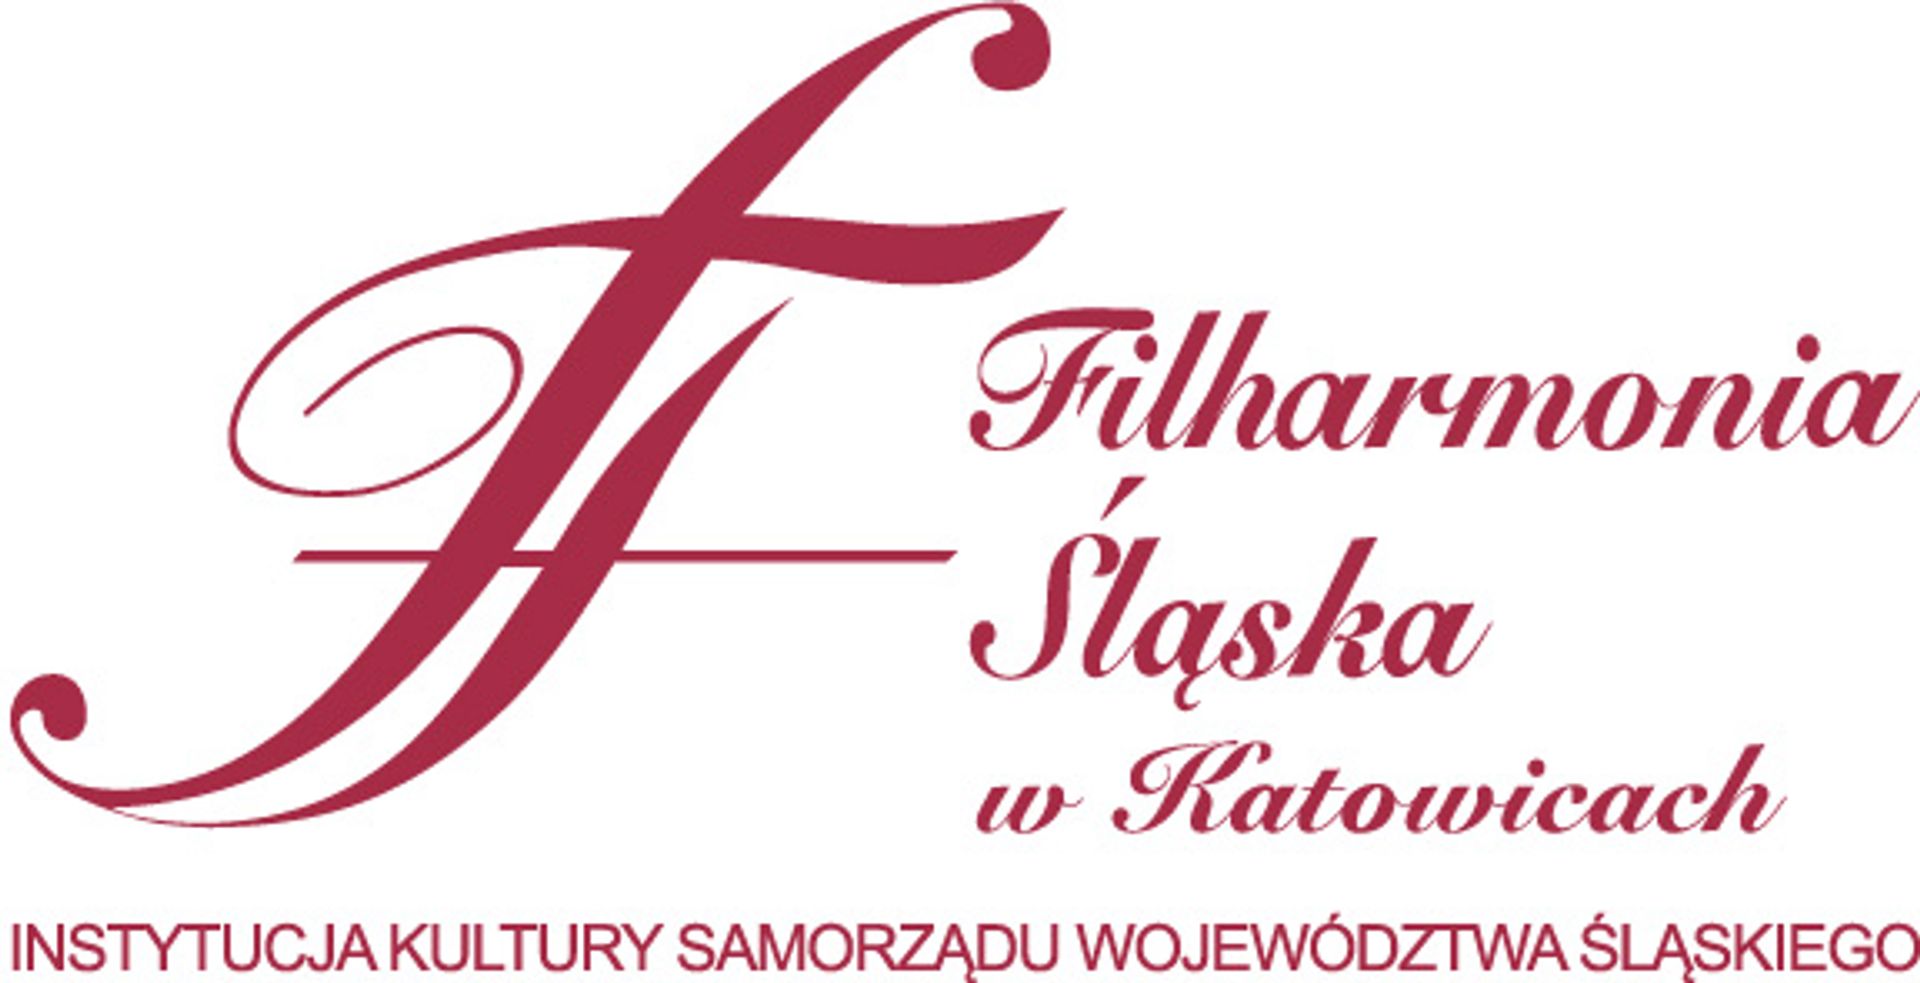  Rozbudowa Filharmonii Śląskiej budową roku 2014